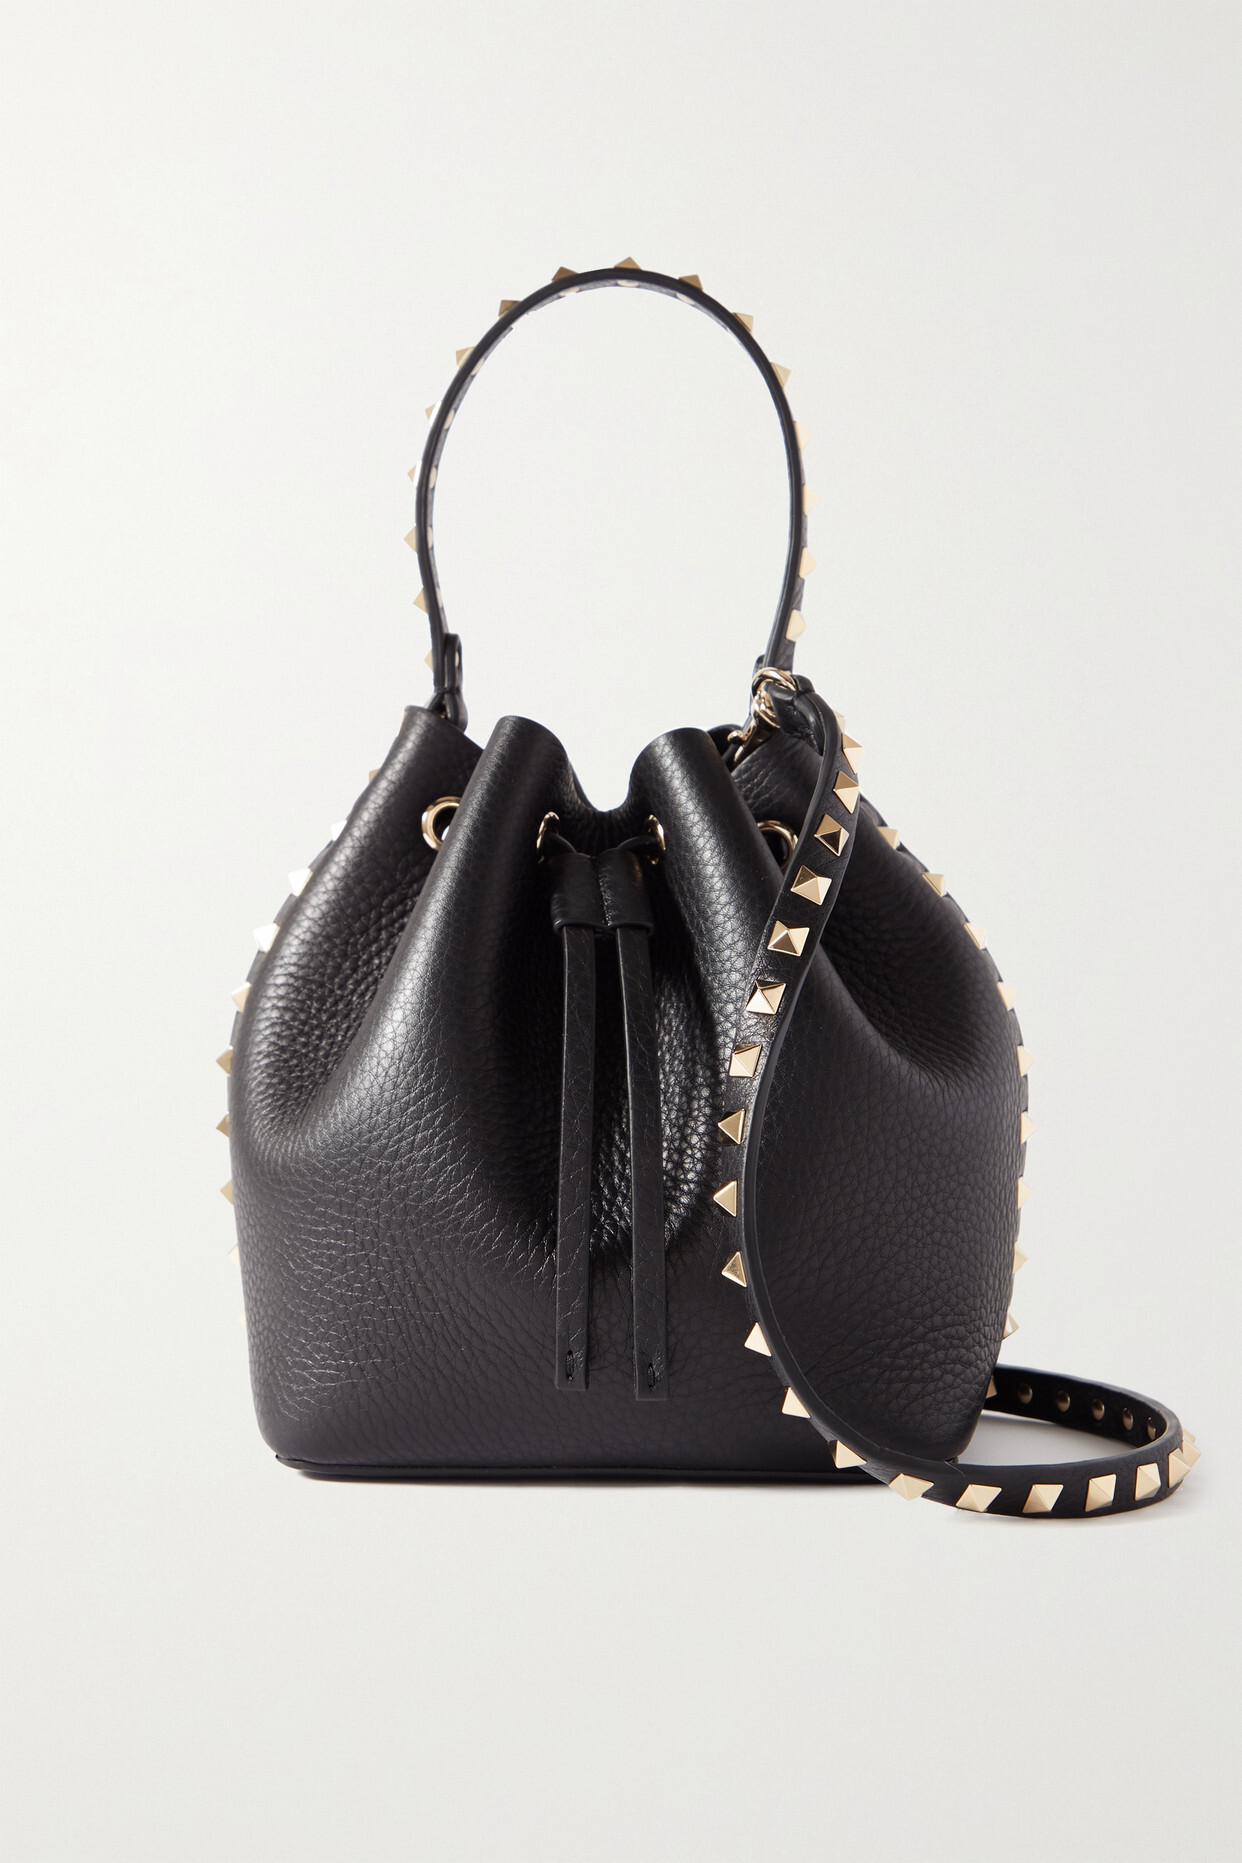 Valentino Garavani - Rockstud Textured-leather Bucket Bag - Black